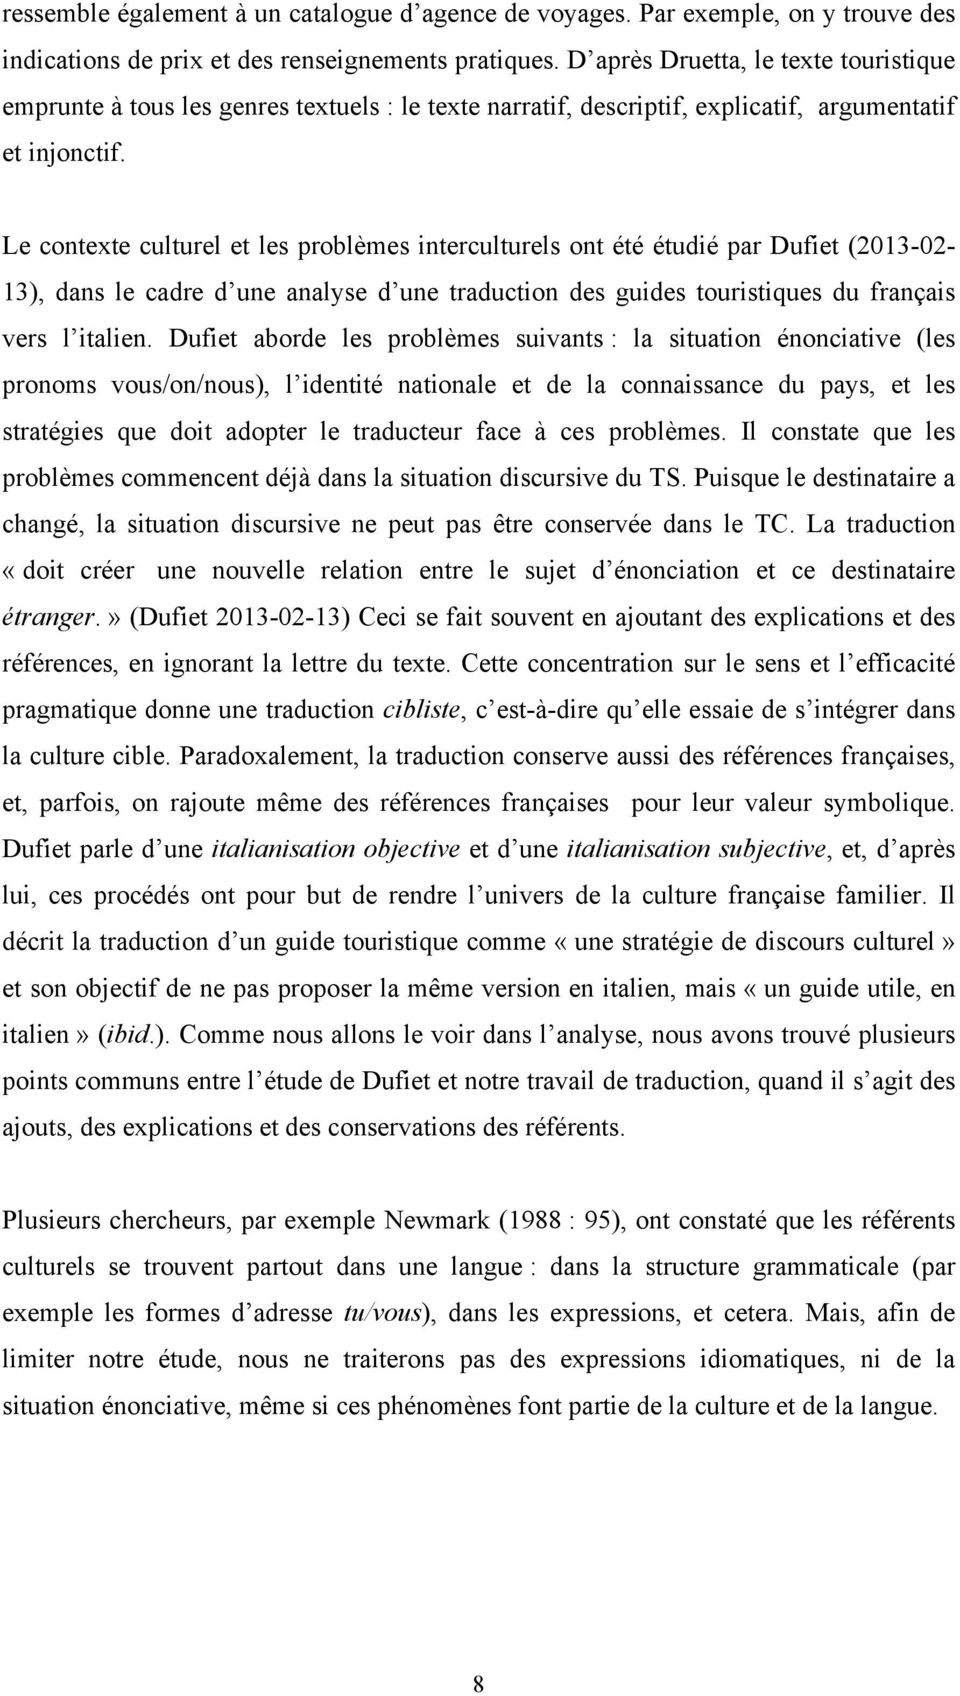 Le contexte culturel et les problèmes interculturels ont été étudié par Dufiet (2013-02- 13), dans le cadre d une analyse d une traduction des guides touristiques du français vers l italien.